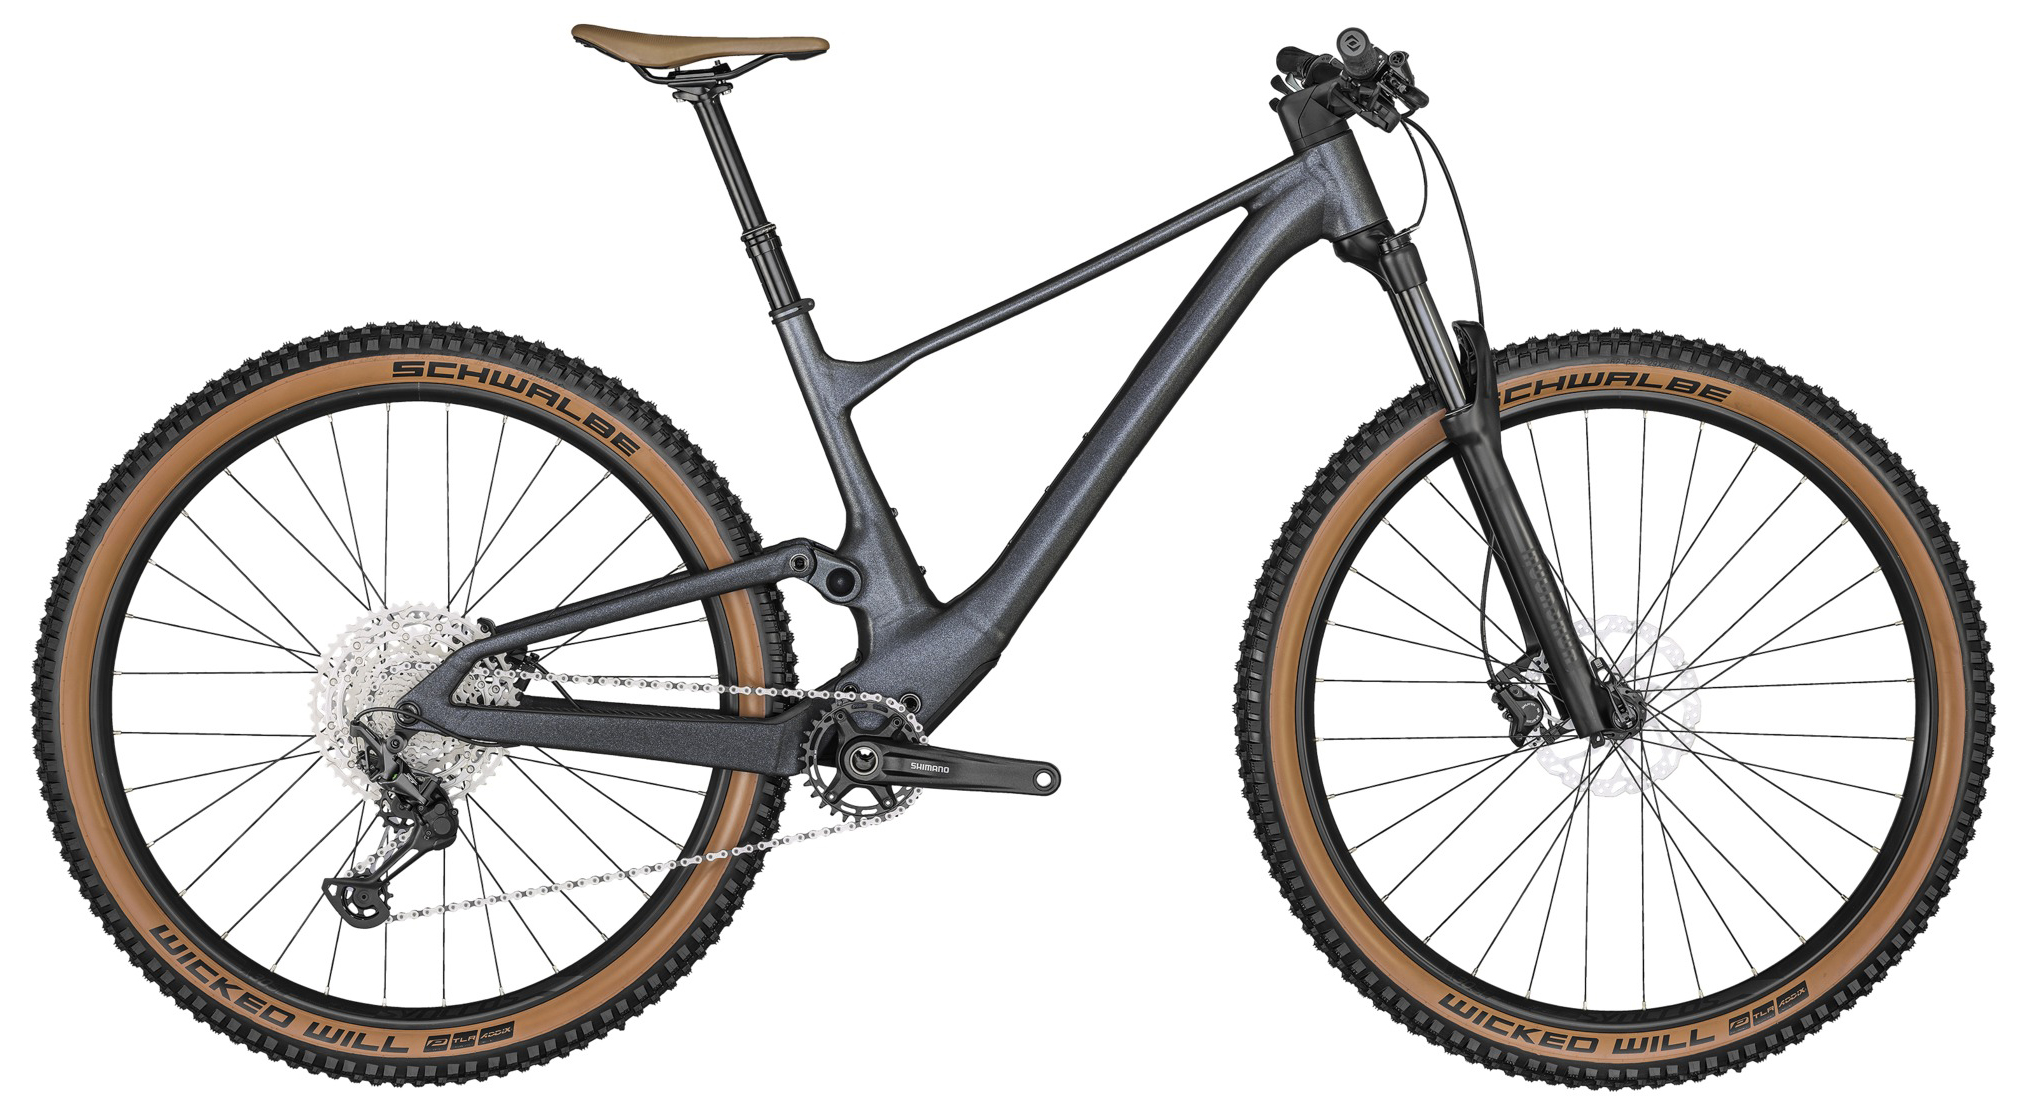  Отзывы о Двухподвесном велосипеде Scott Spark 960 2022